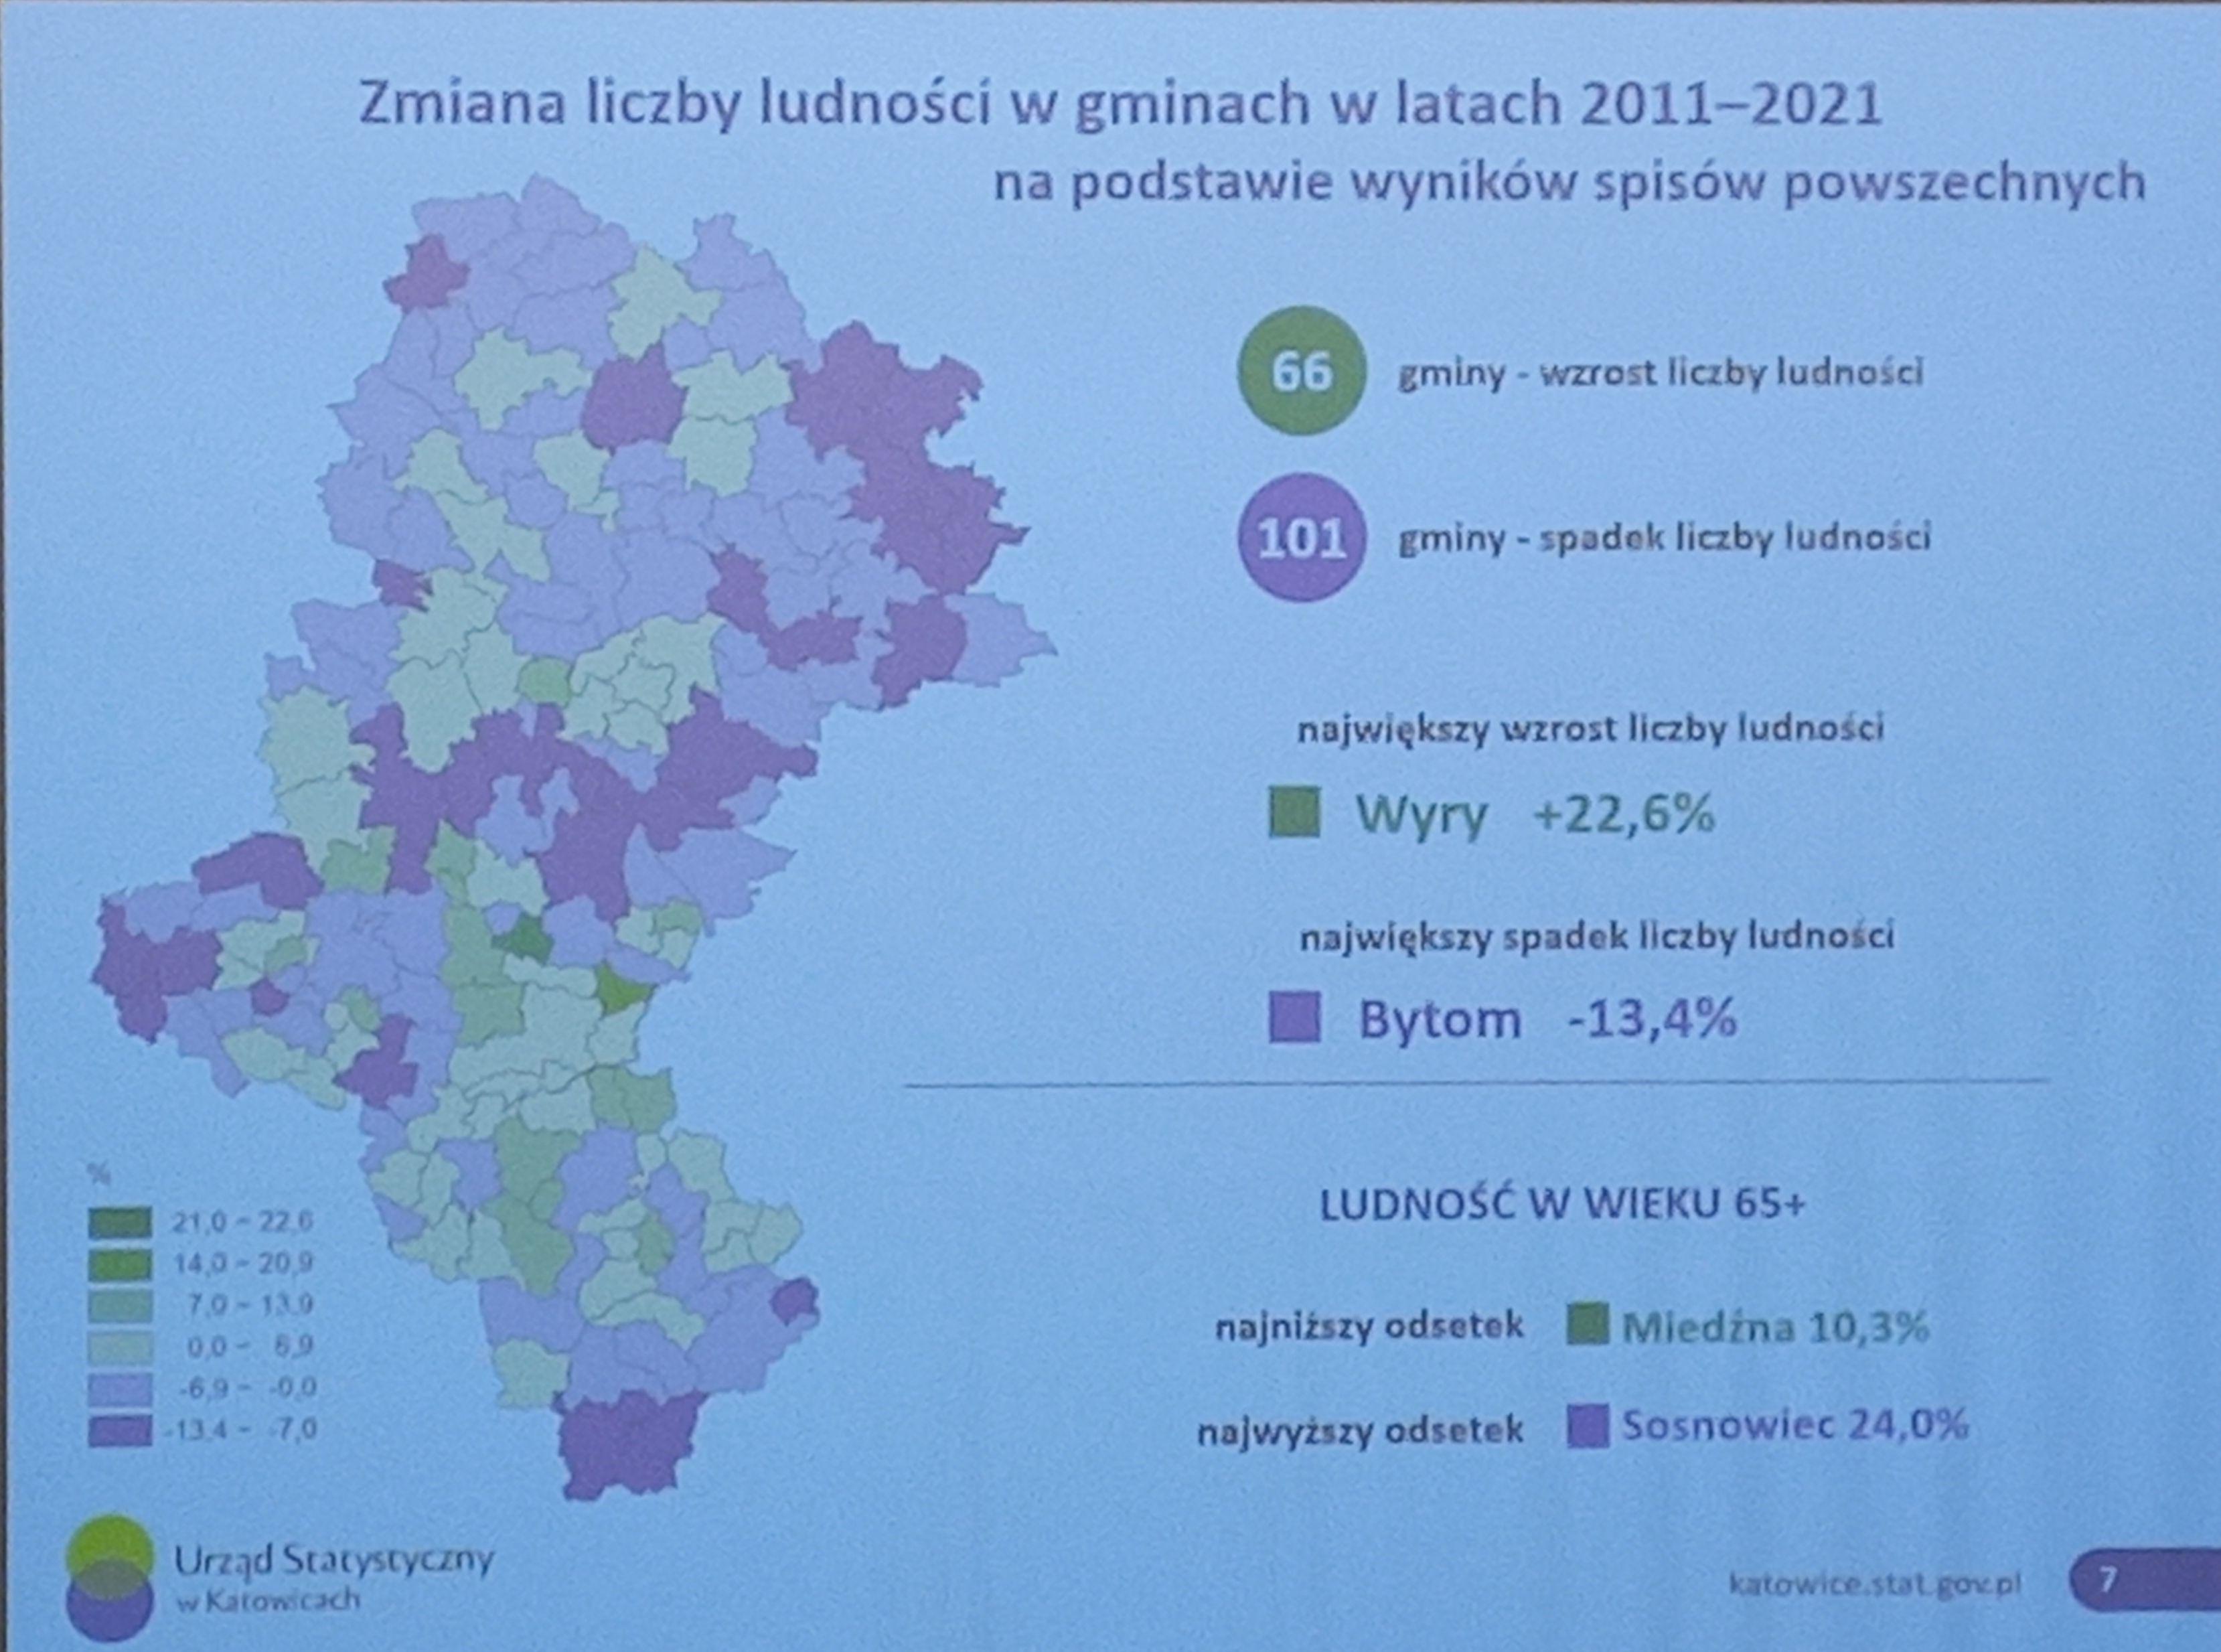 Zmiana liczby ludności w gminach woj. śląskiego 2011 - 2021